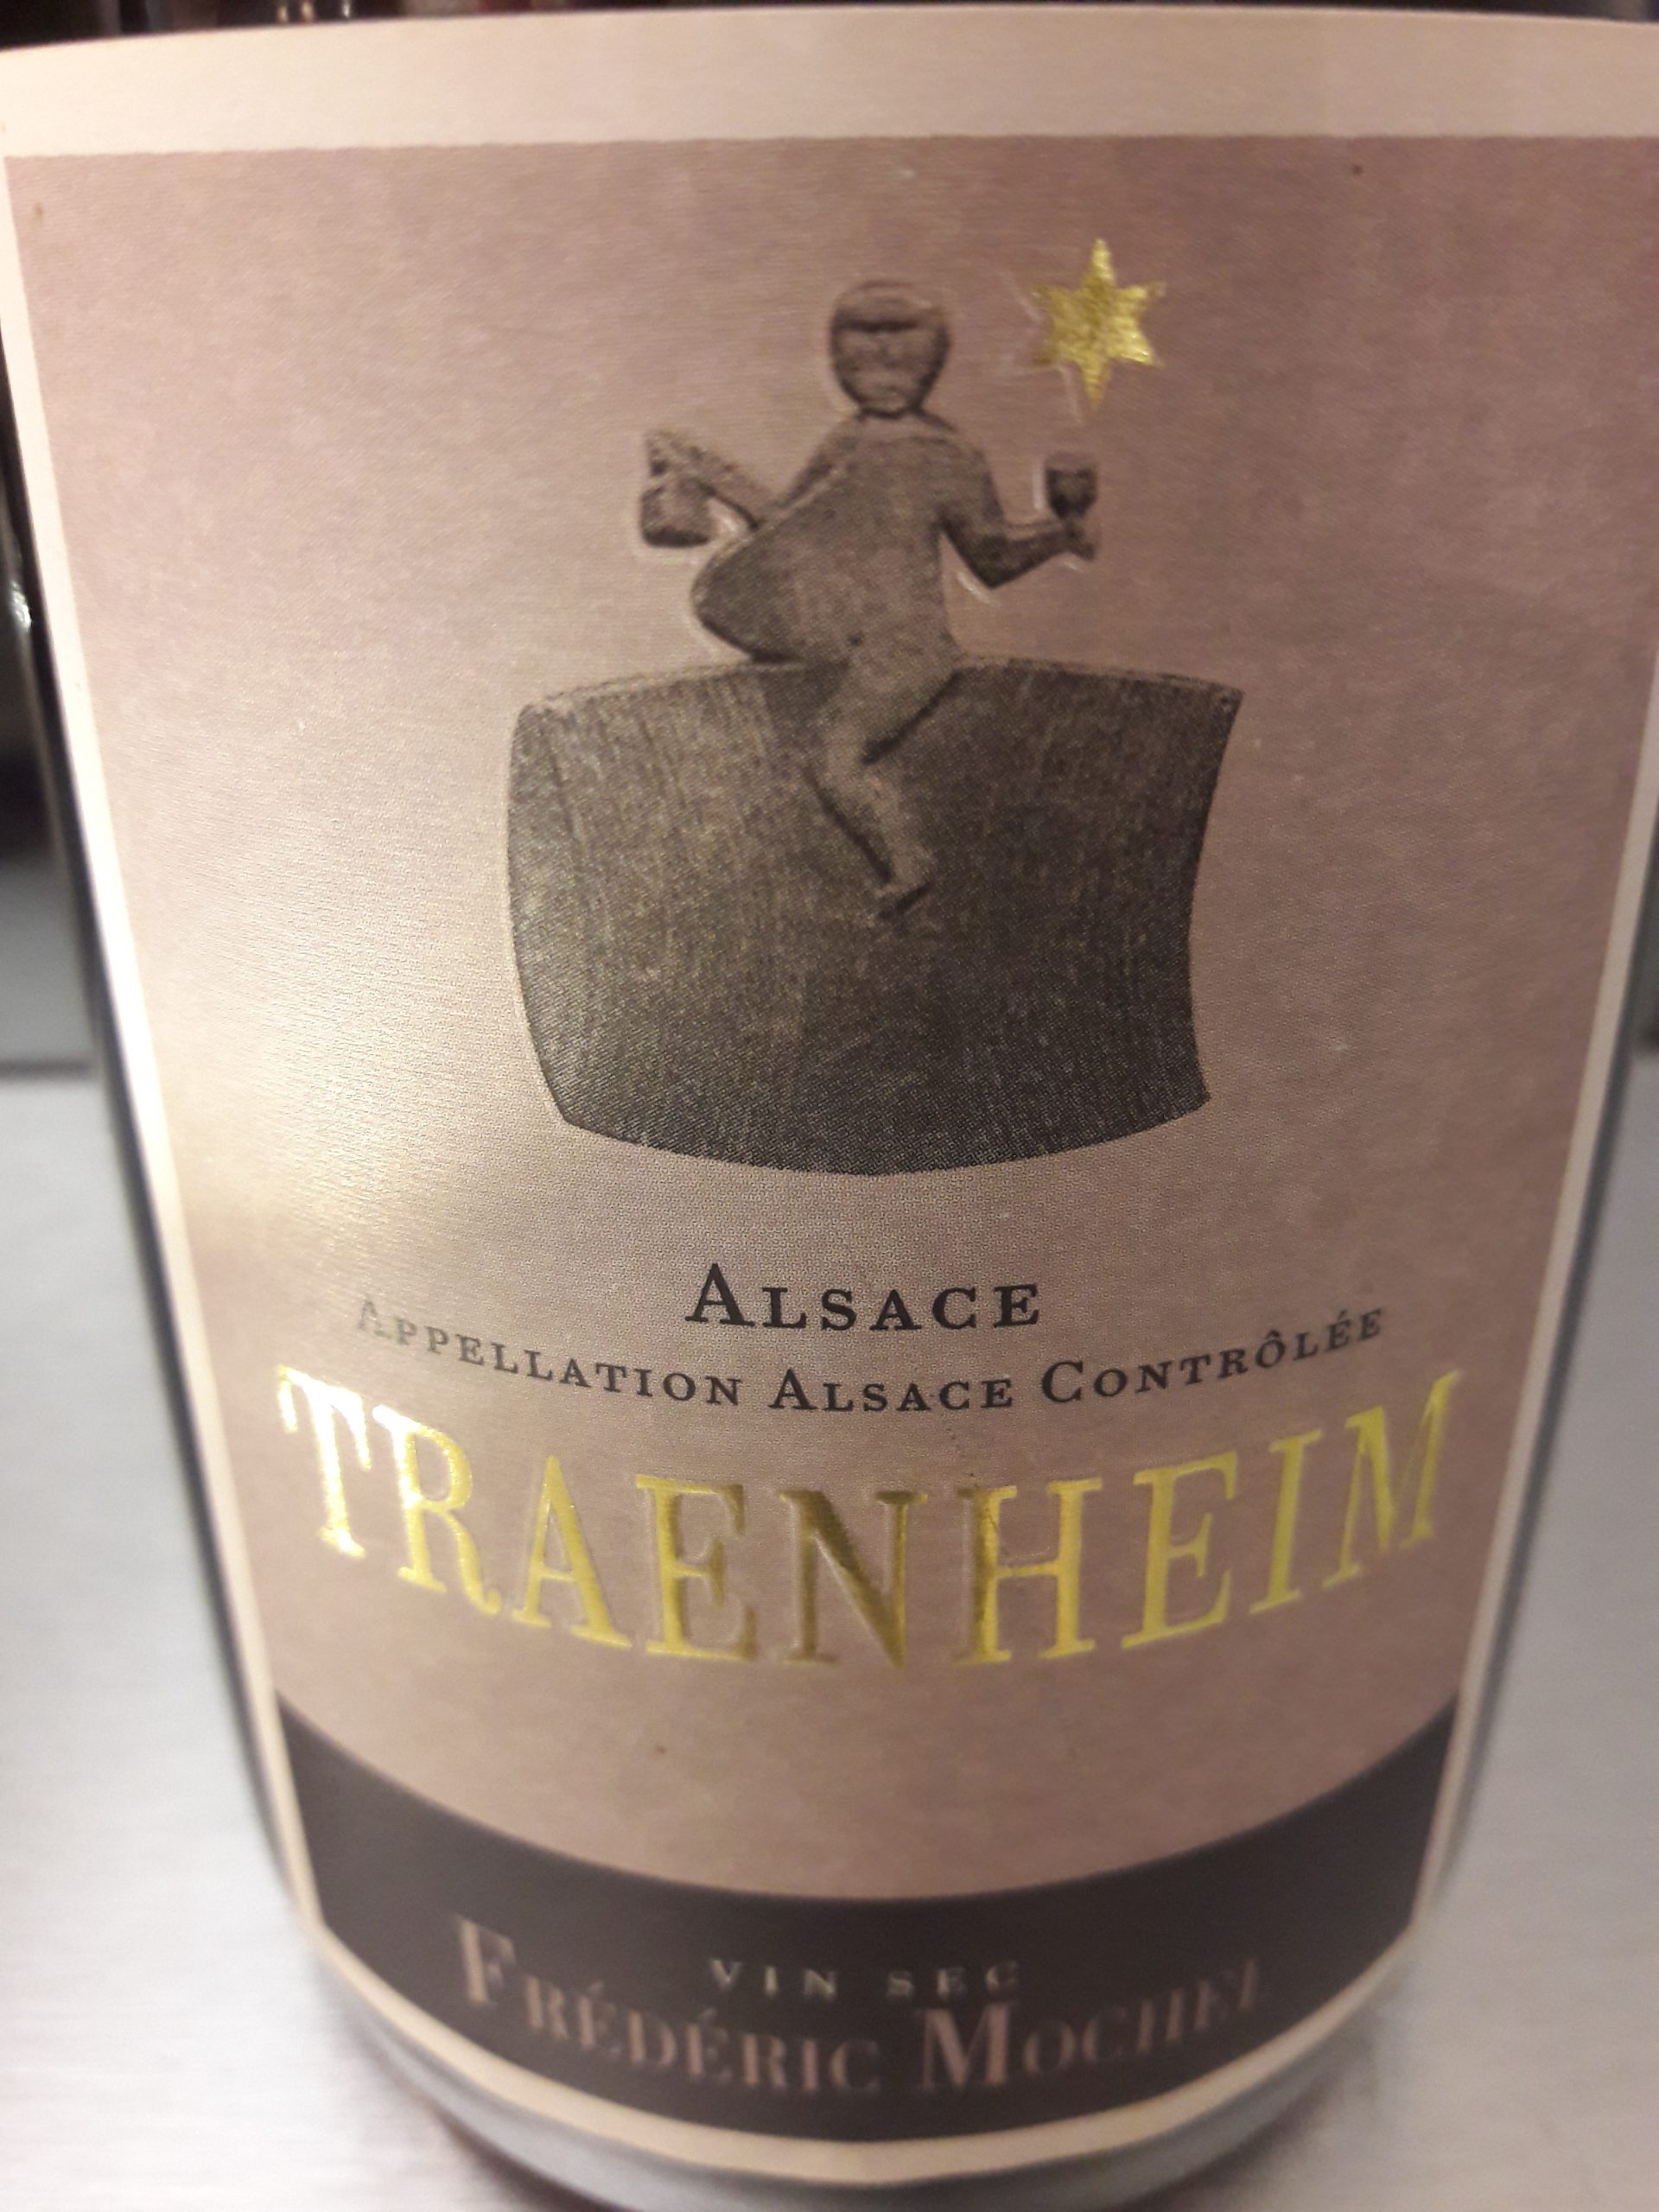 TRAENHEIM-MOCHEL-Etiquette Traenheim